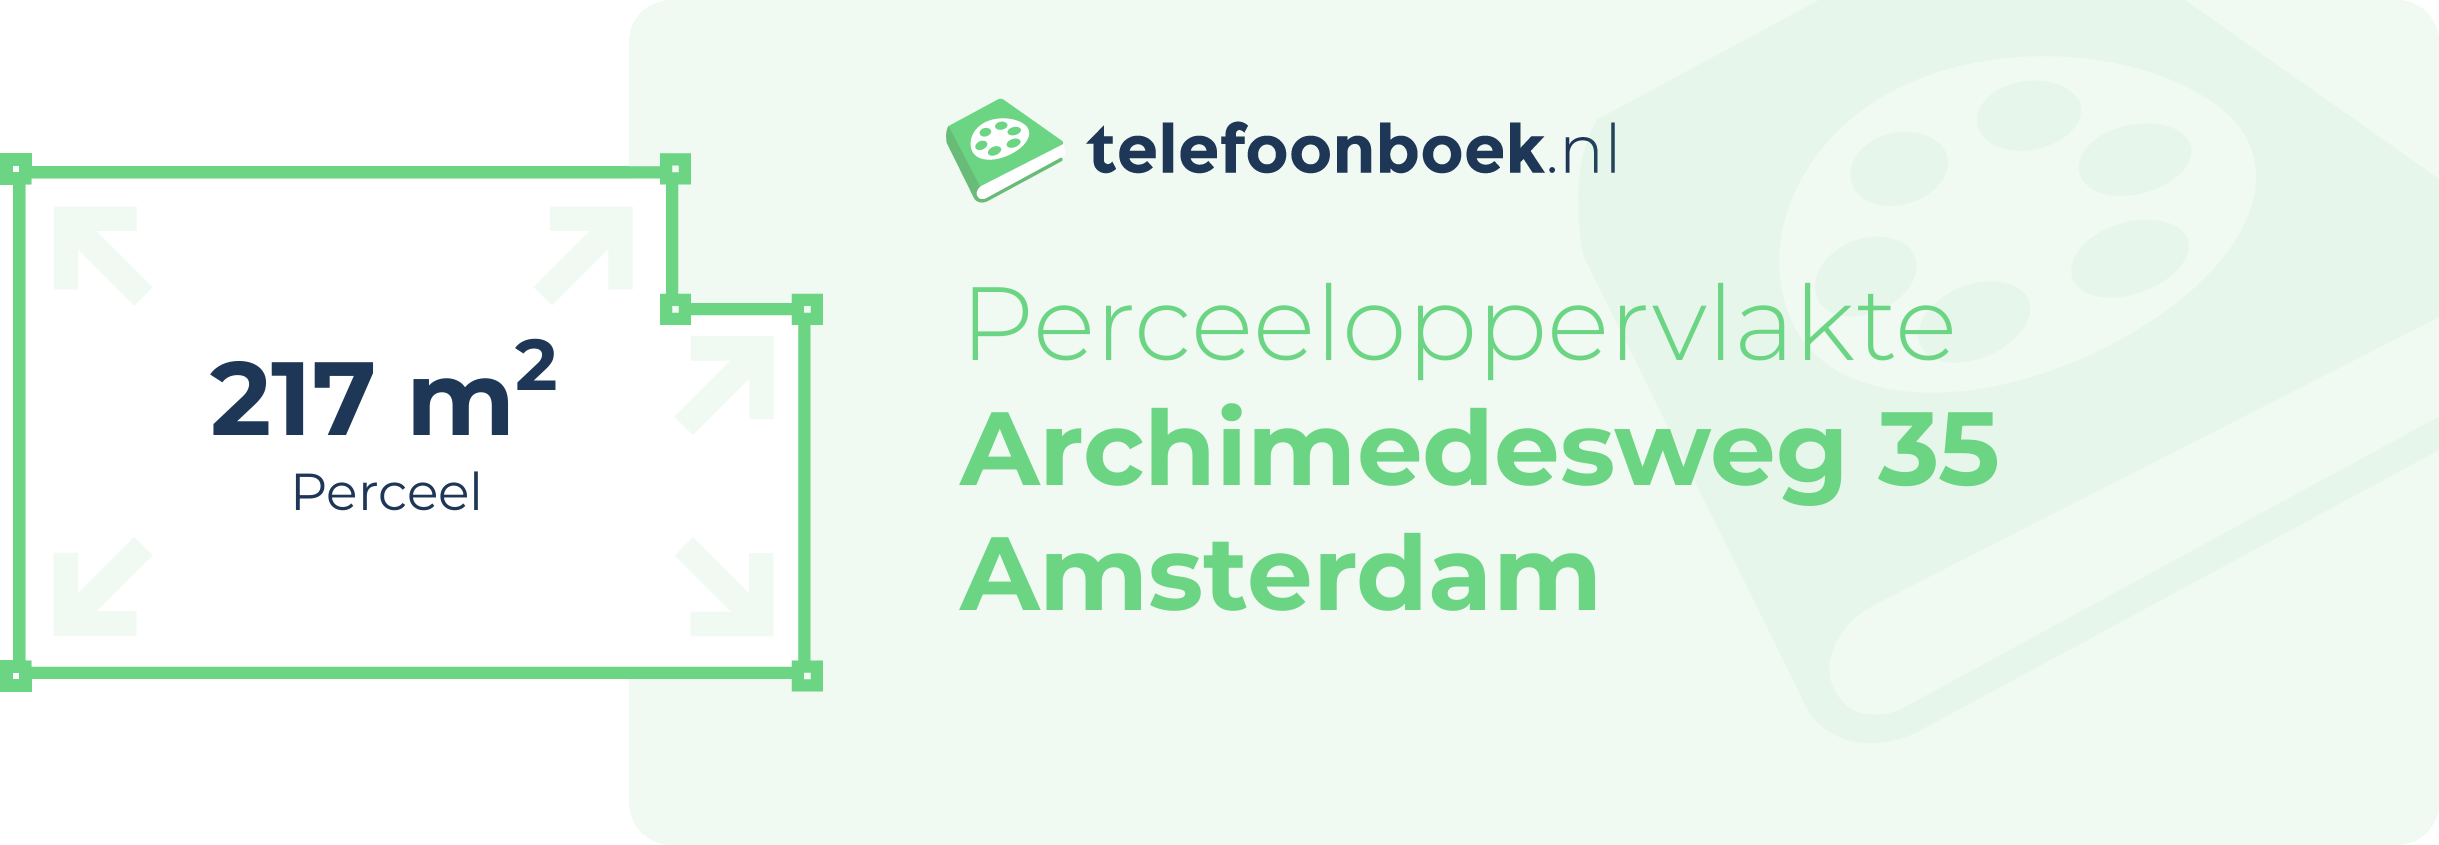 Perceeloppervlakte Archimedesweg 35 Amsterdam